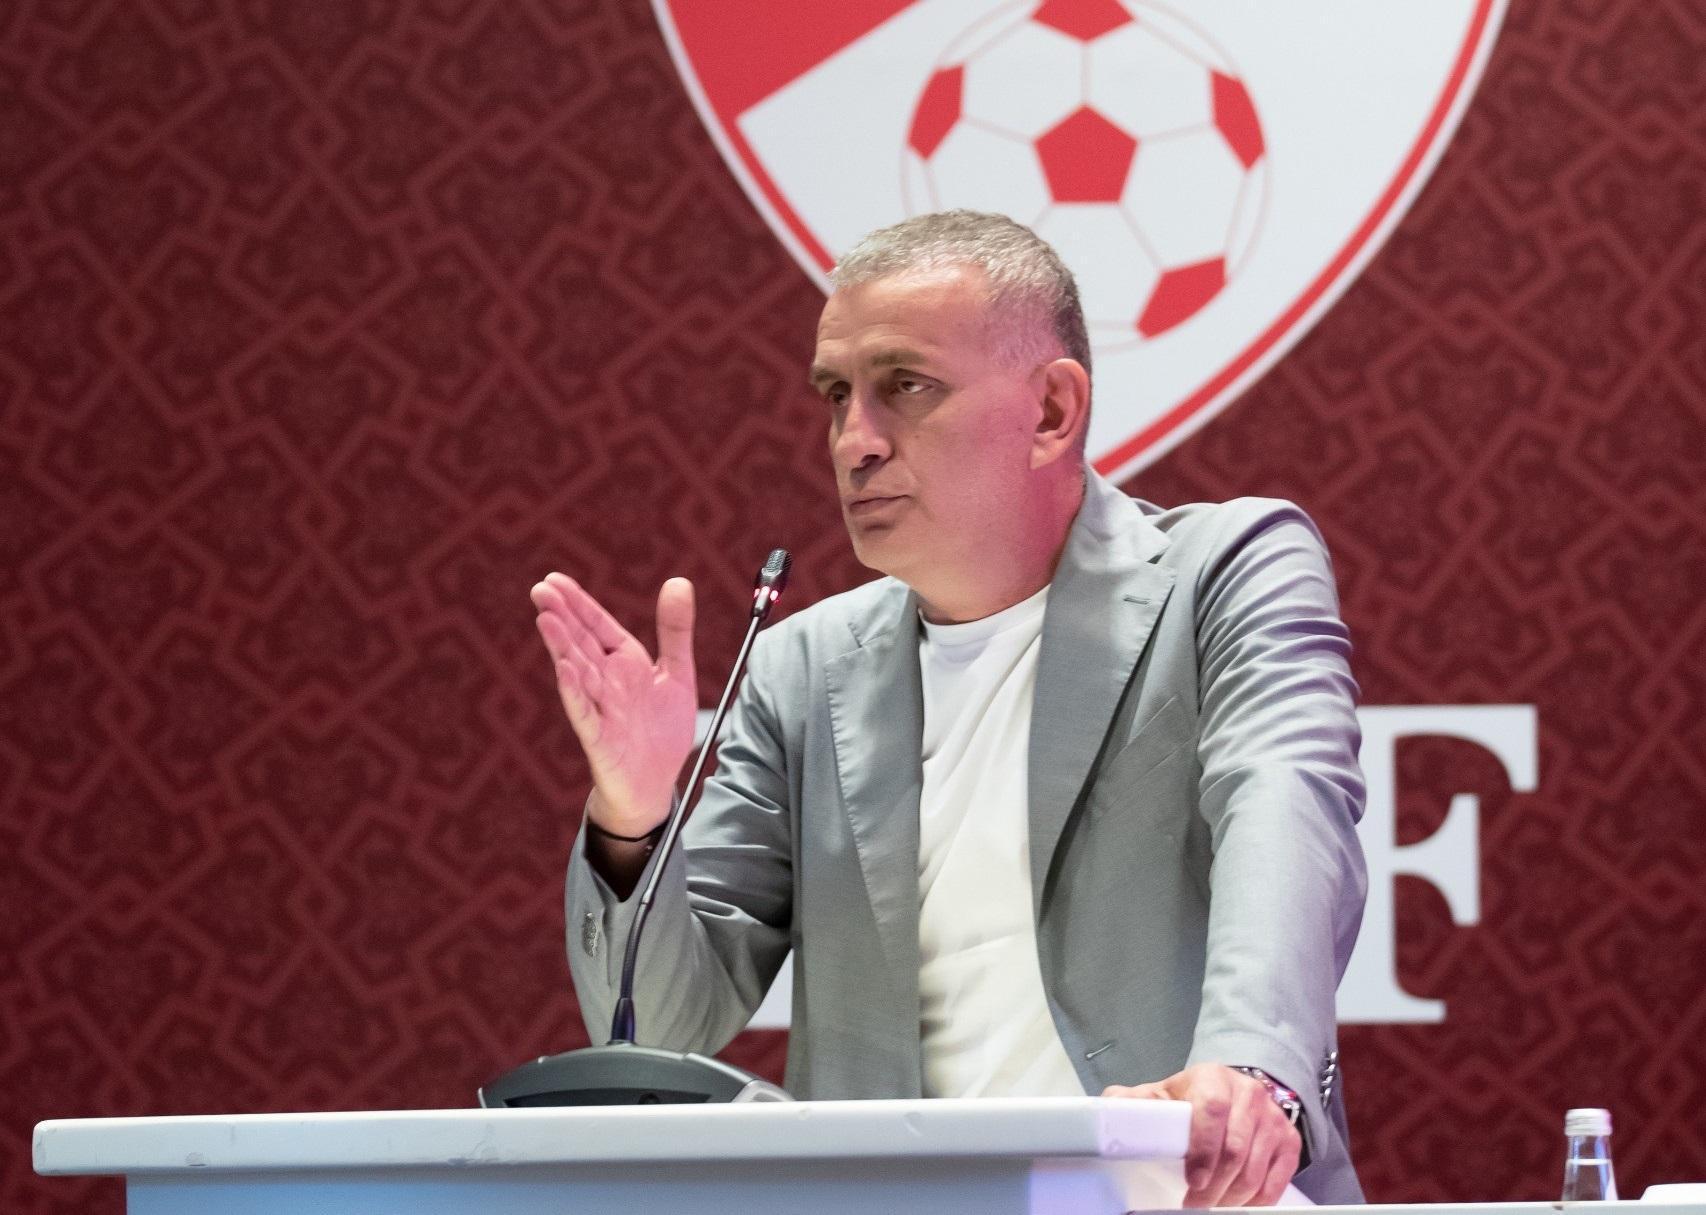 TFF'nin yeni başkanı İbrahim Hacıosmanoğlu: Futbola barış ve kardeşliği getirmemiz lazım